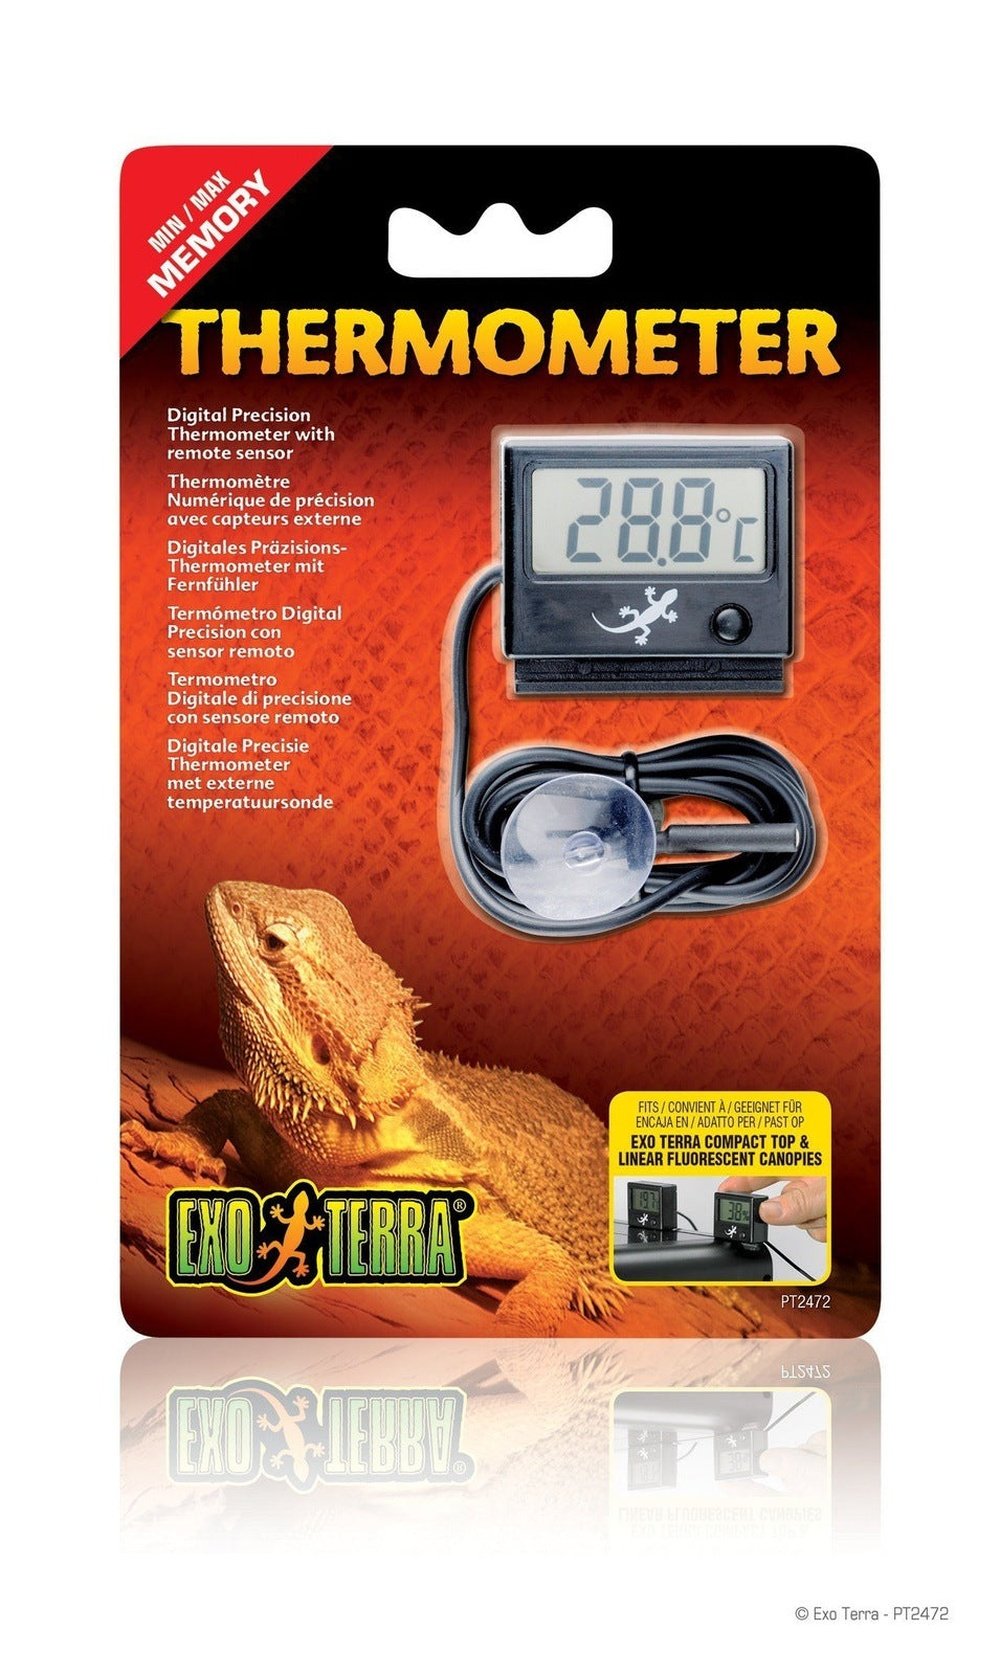 Thermomètre Hygromètre digital pour terrarium ZooMed